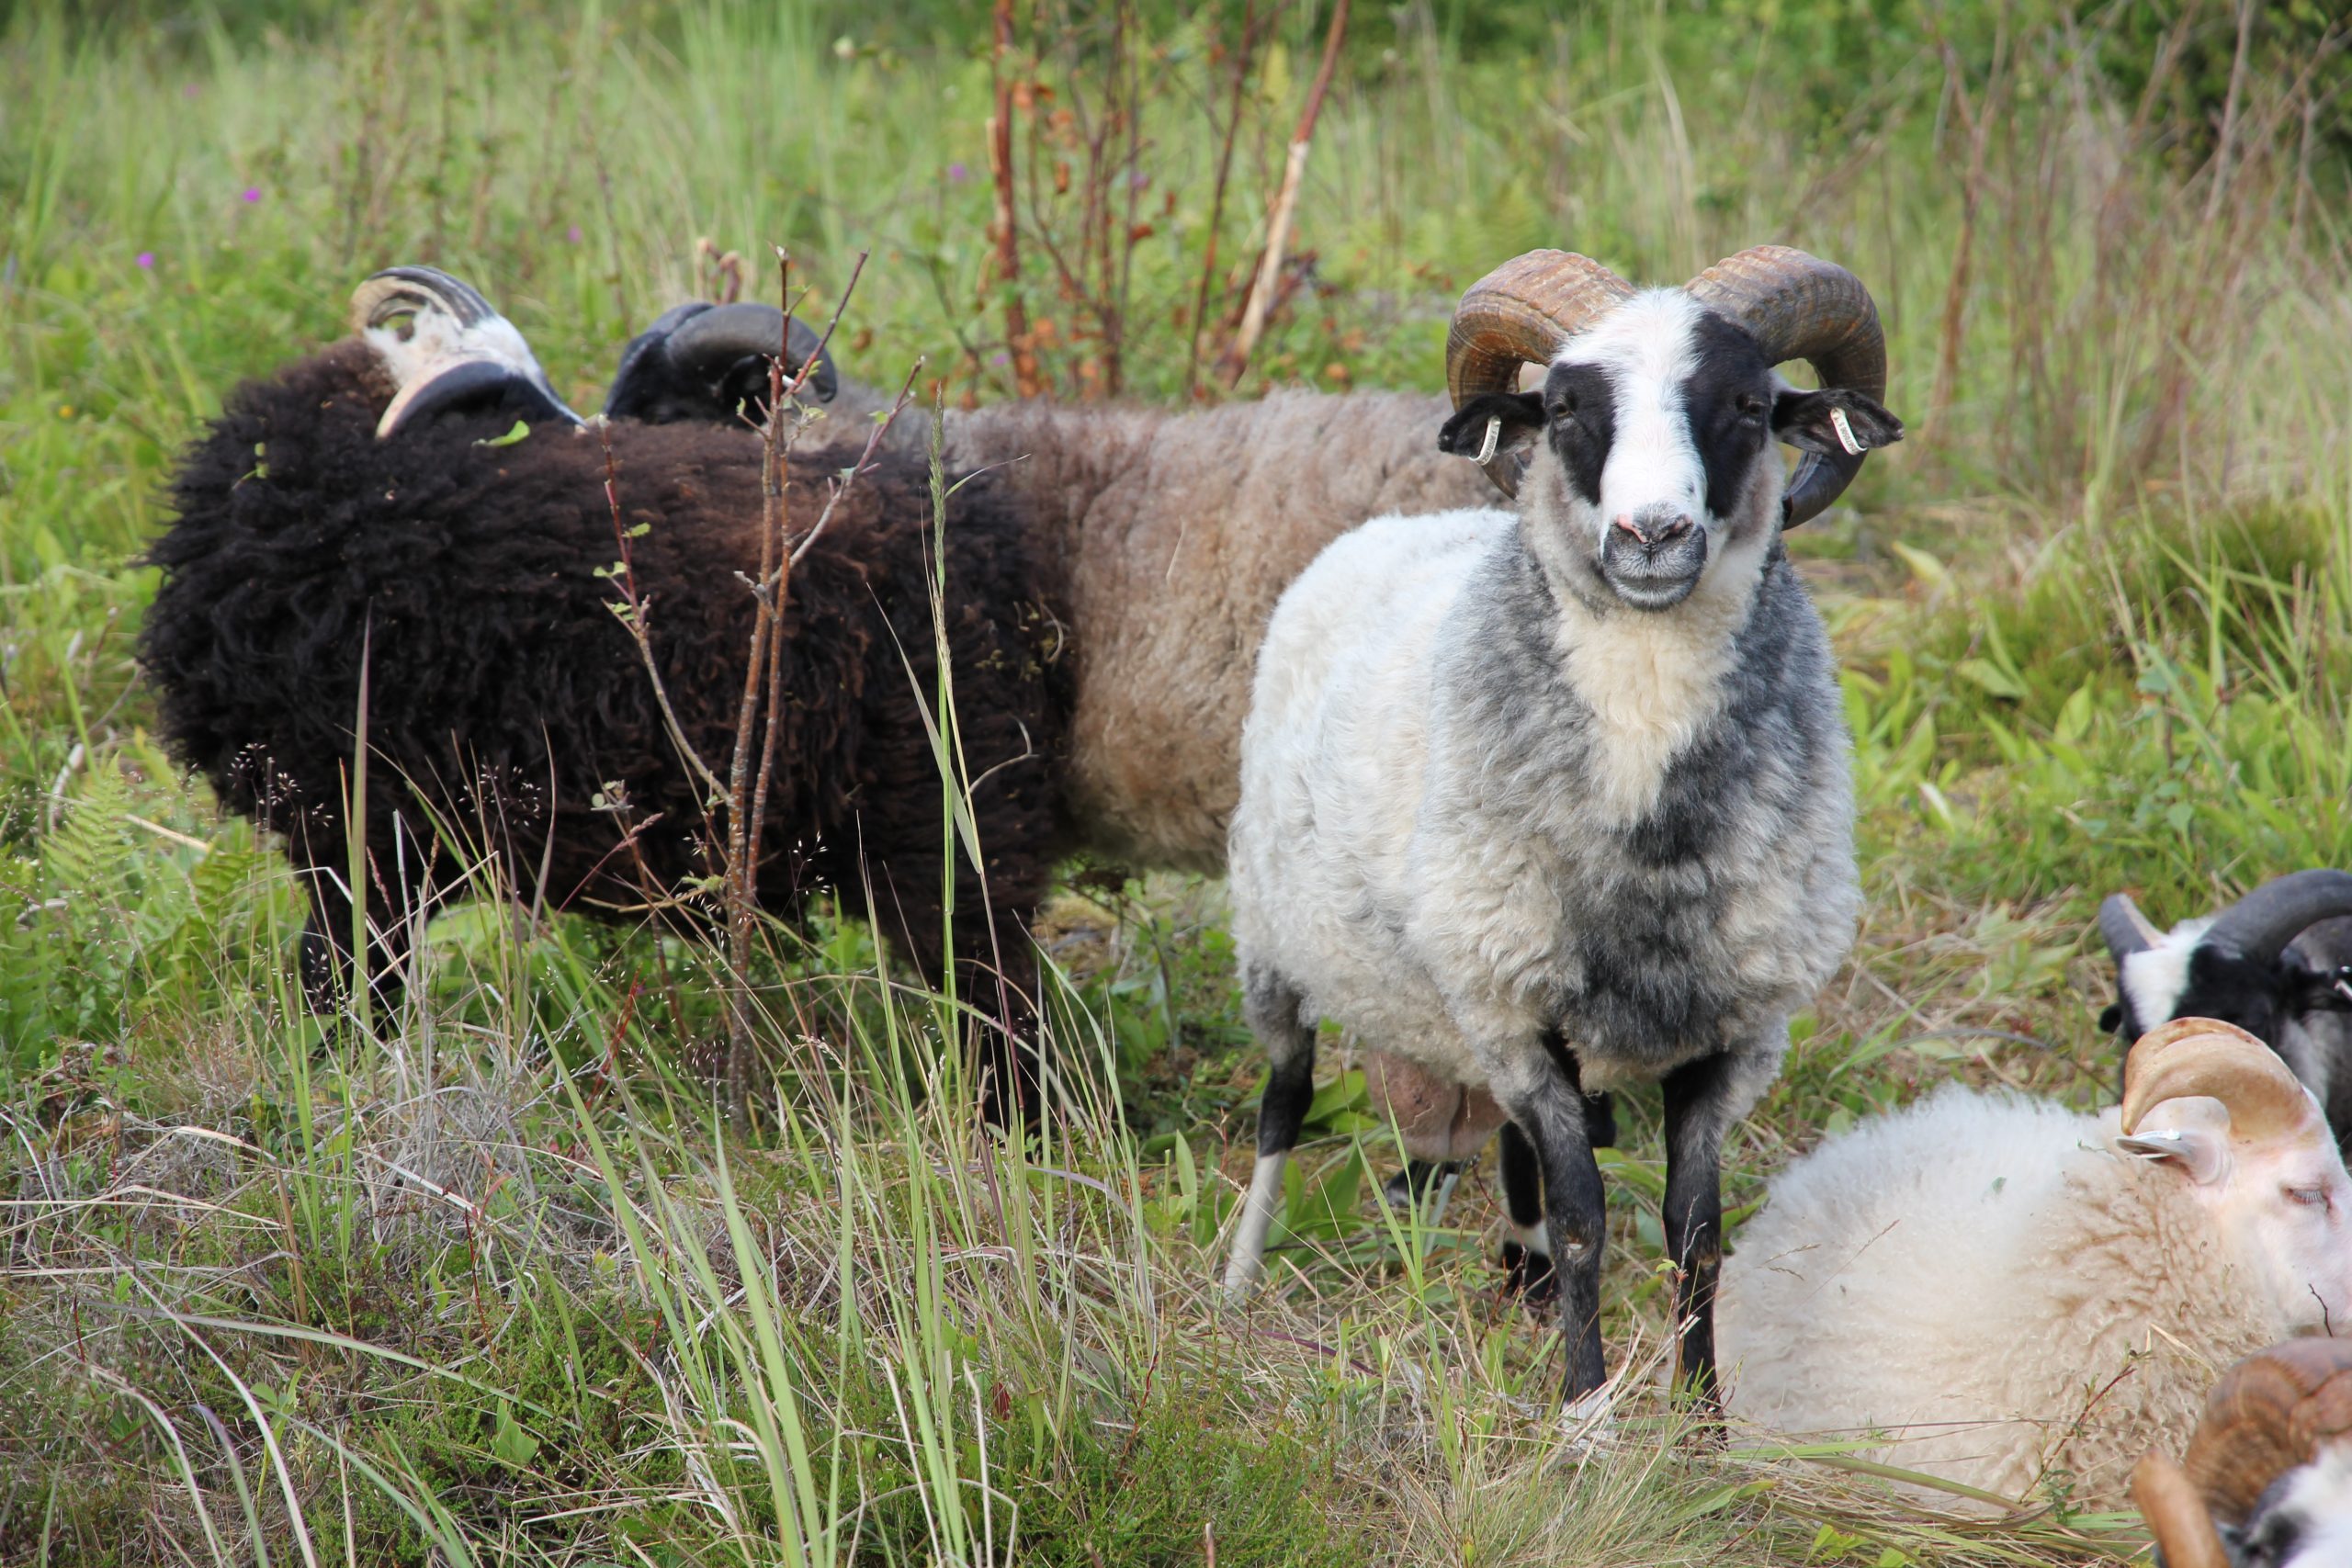 Kuvassa on pieni ryhmä erivärisiä lampaita. Vasemmassa yläkulmassa seisoskelee kaksi ruskeaa lammasta vierekkäin. Keskellä kuvaa seisoo yksi valkomusta lammas katsomassa suoraan kameraan. Oikeassa alanurkassa pari mustavalkoista ja yksi vaaleanruskea lammas ovat pistäneet maata.